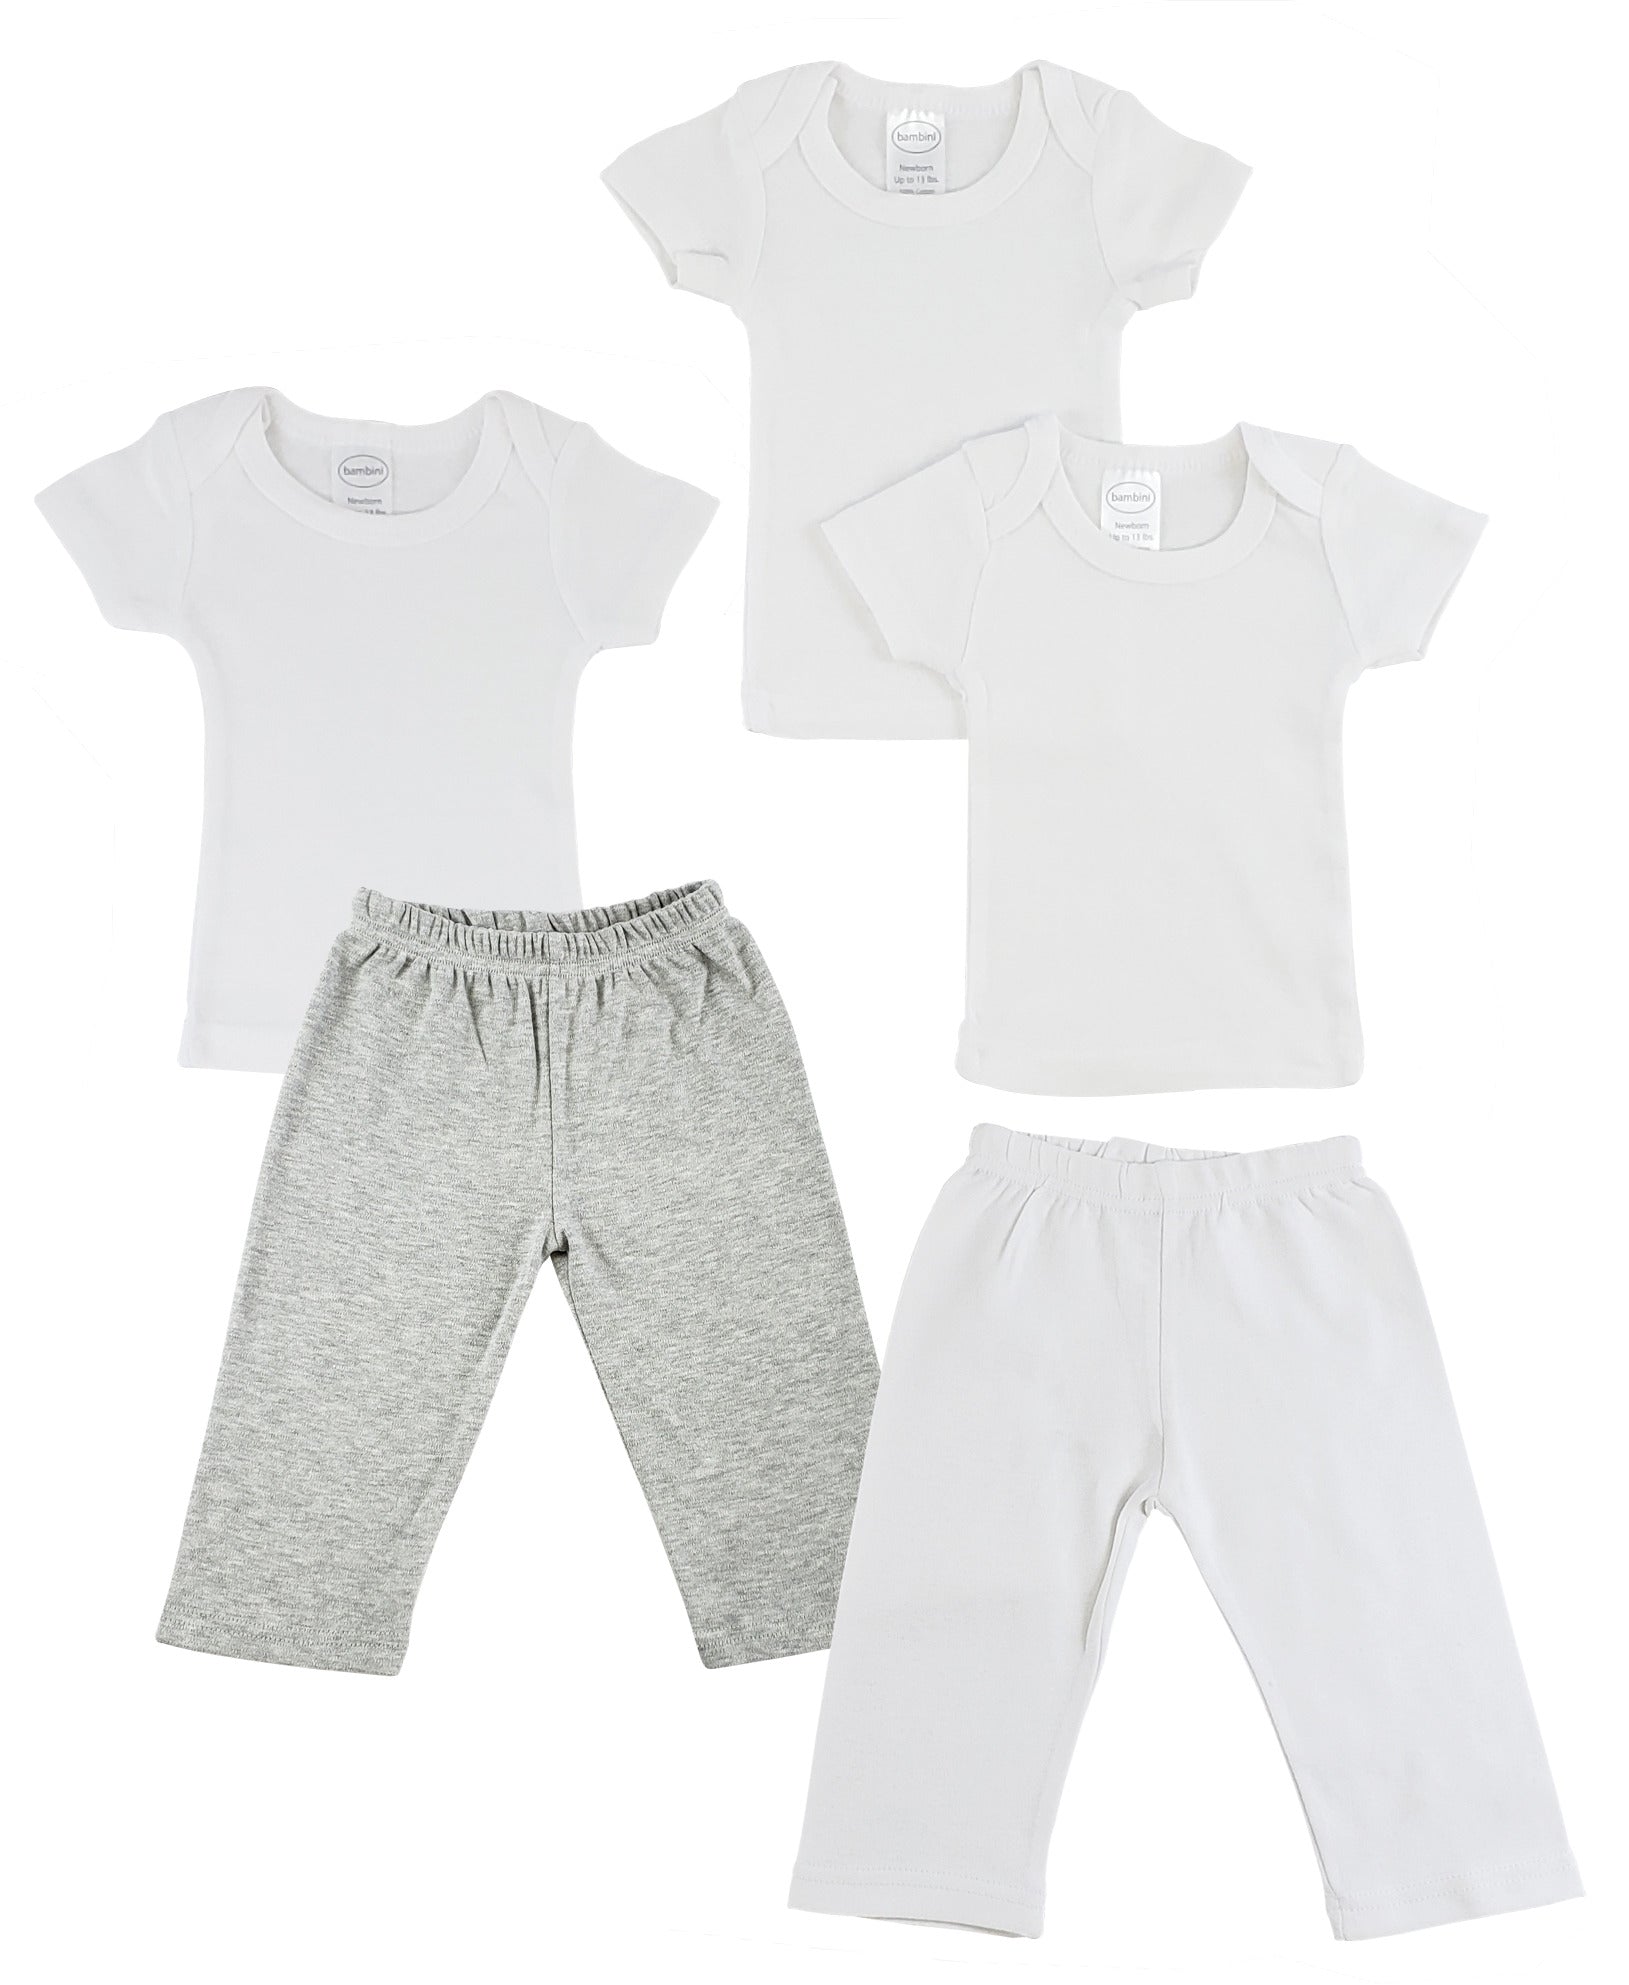 Infant T-Shirts and Track Sweatpants CS_0463